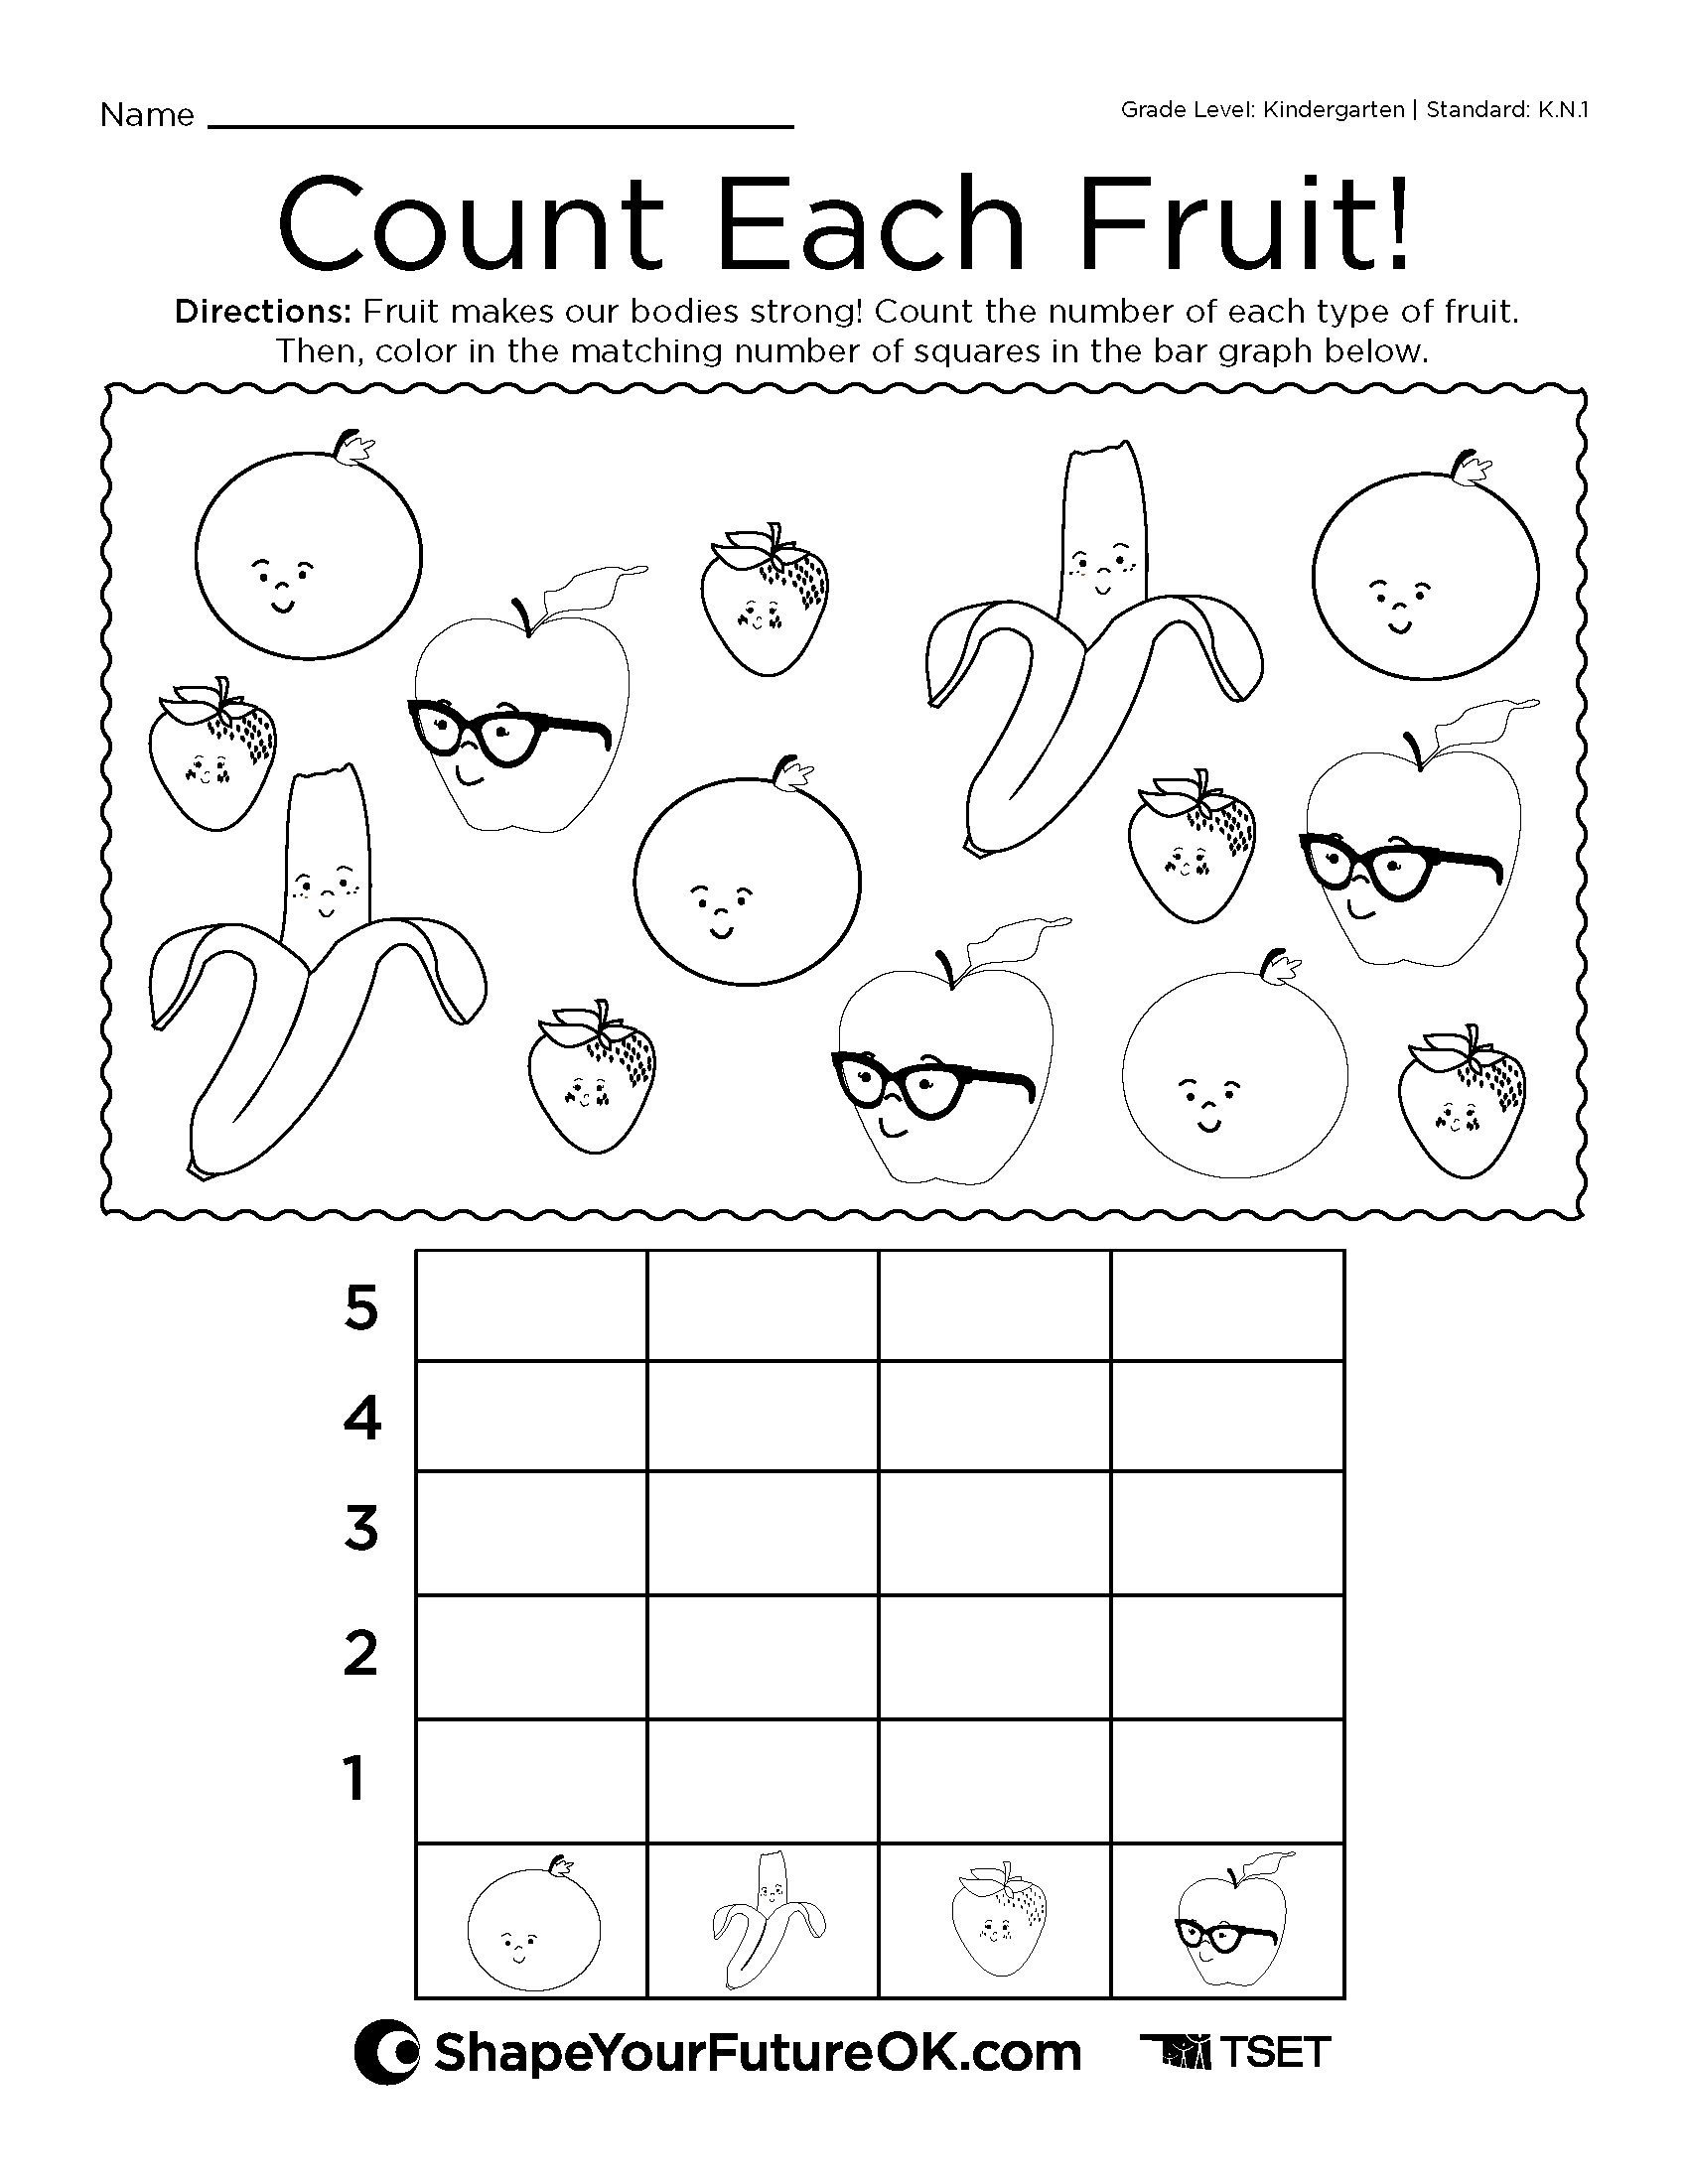 “Count Each Fruit” Worksheet: Kindergarten download